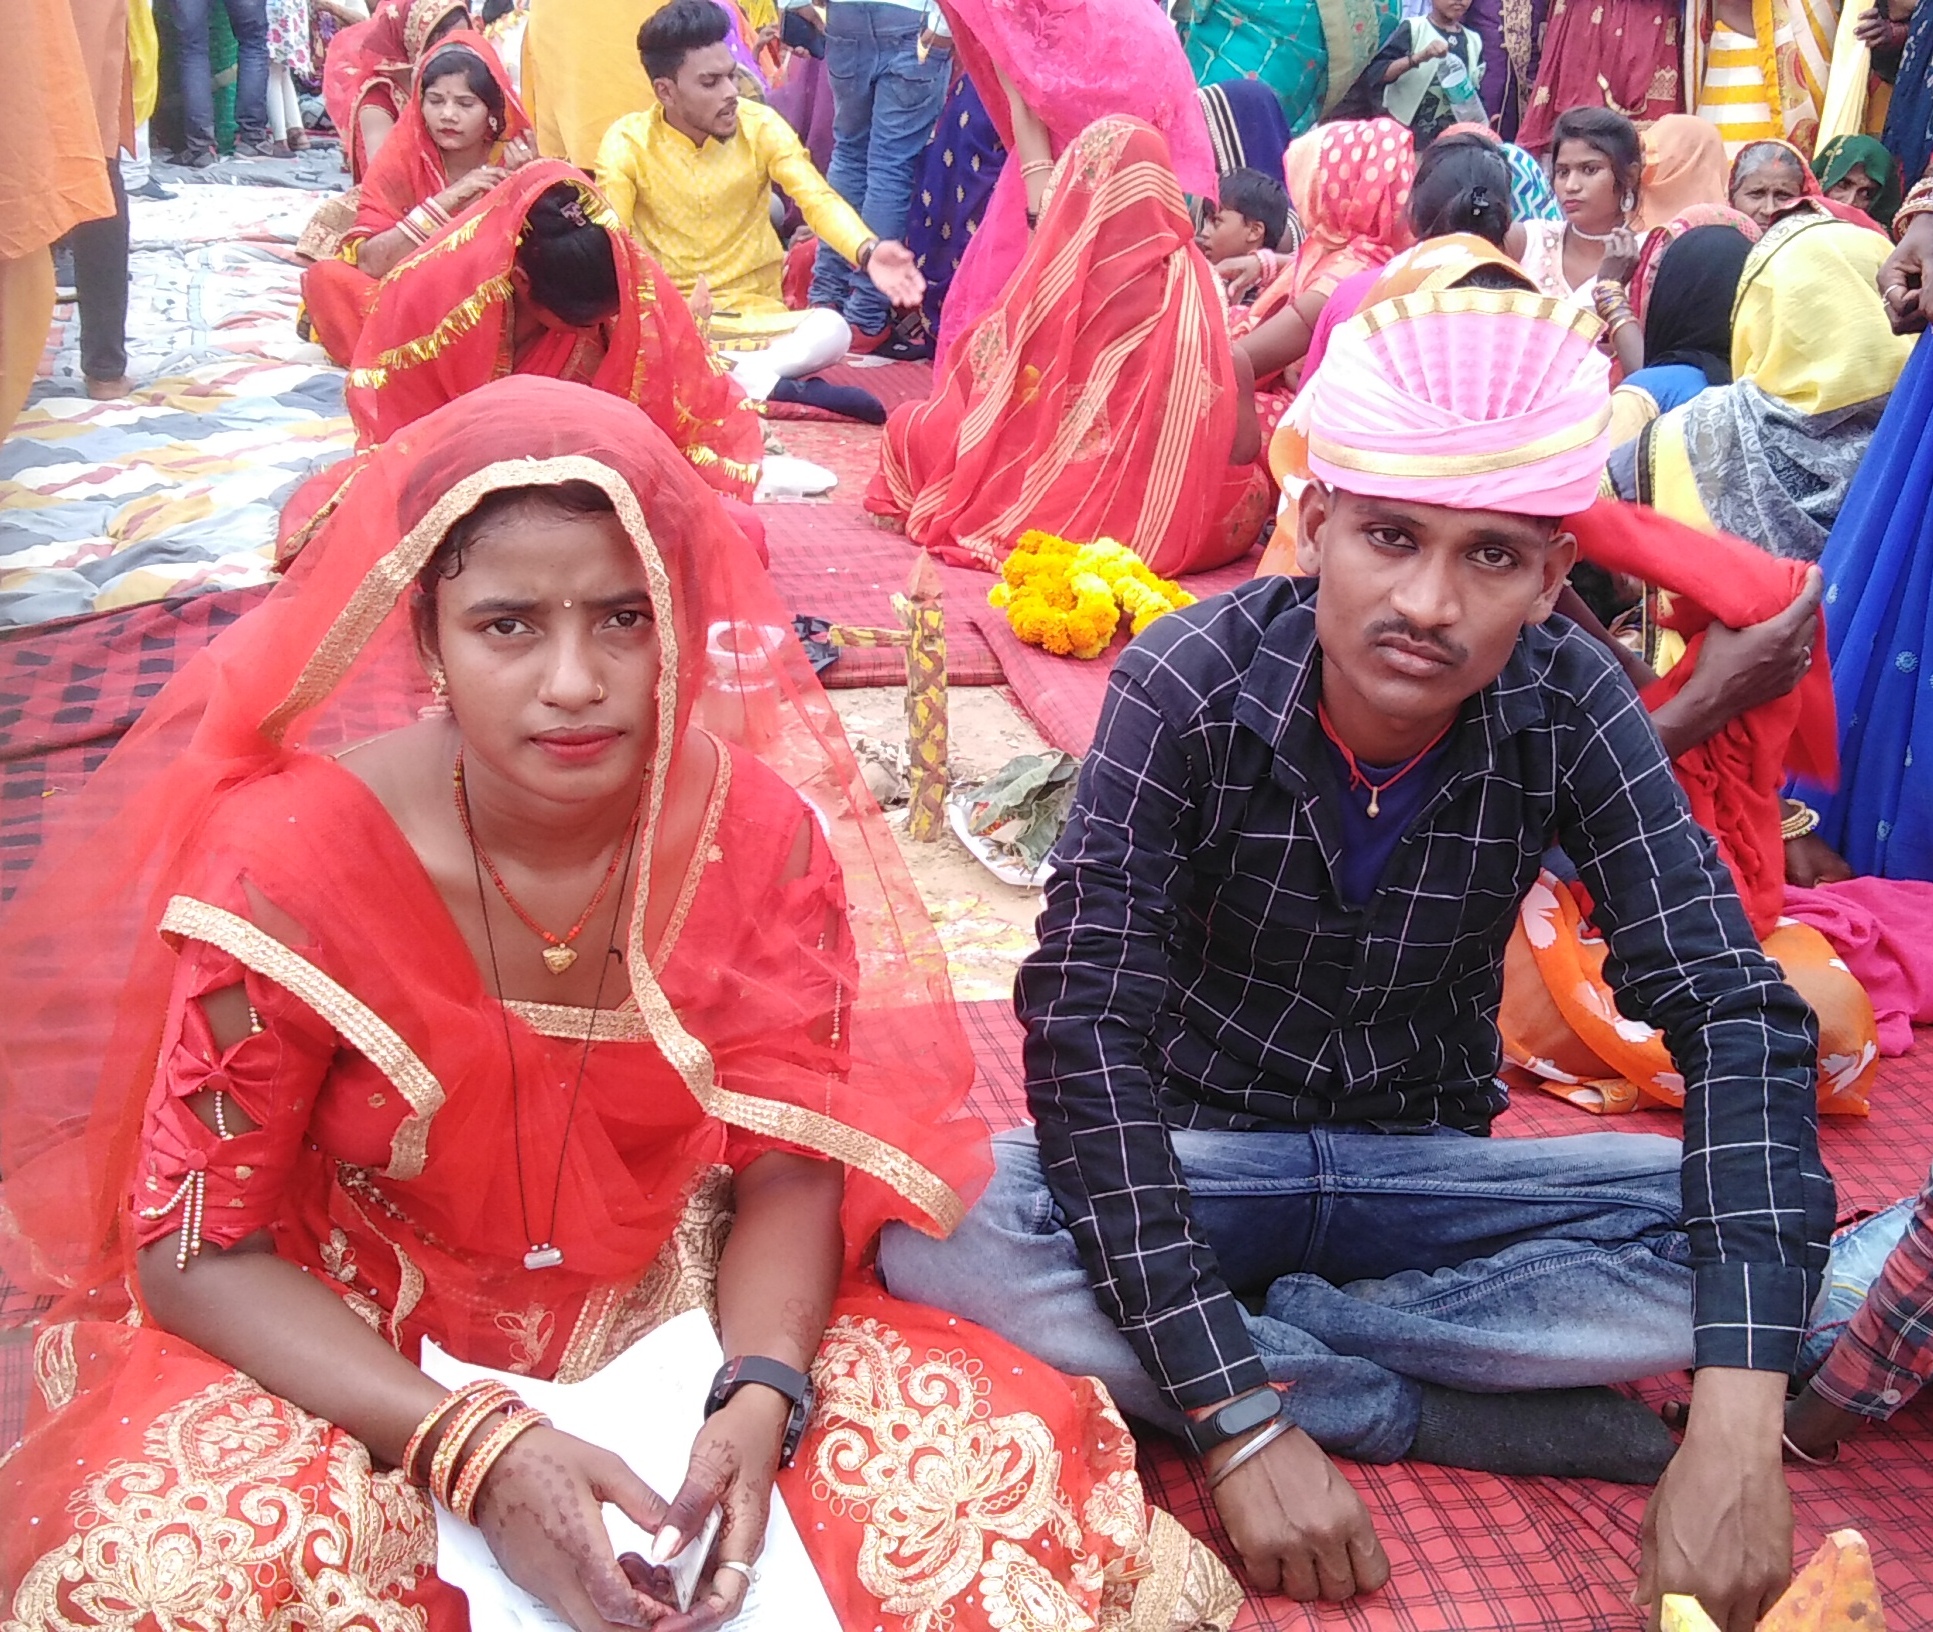 मुख्यमंत्री कन्यादान विवाह: नईगढ़ी में वधुओं को बांट दी फटी-पुरानी साडि़यां, जवा
में बिना अ ग्निकुंड के कराए सात फेरे…